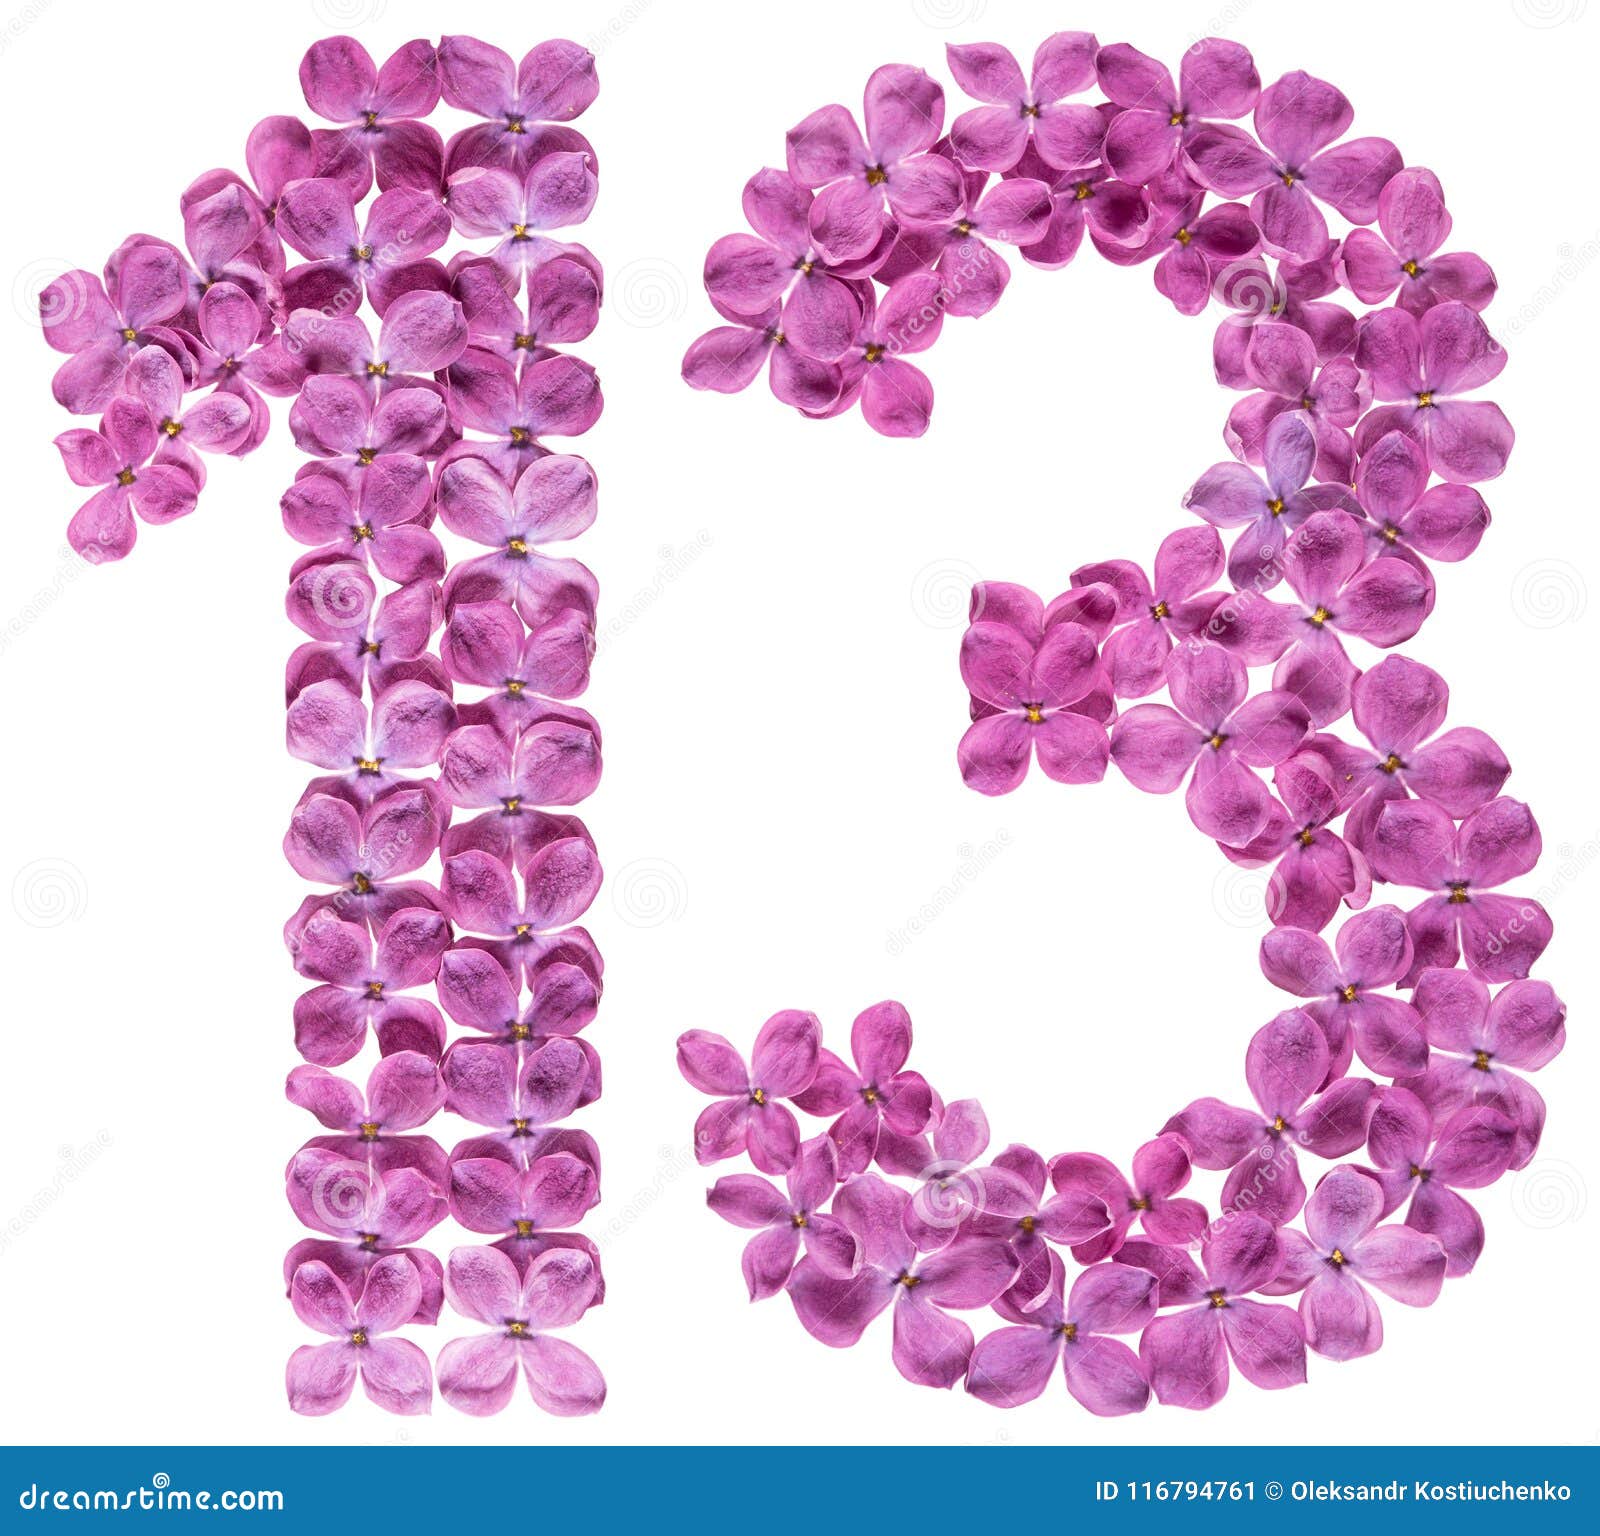 阿拉伯数字13 十三 从丁香花 被隔绝库存图片 图片包括有阿拉伯数字13 十三 从丁香花 被隔绝